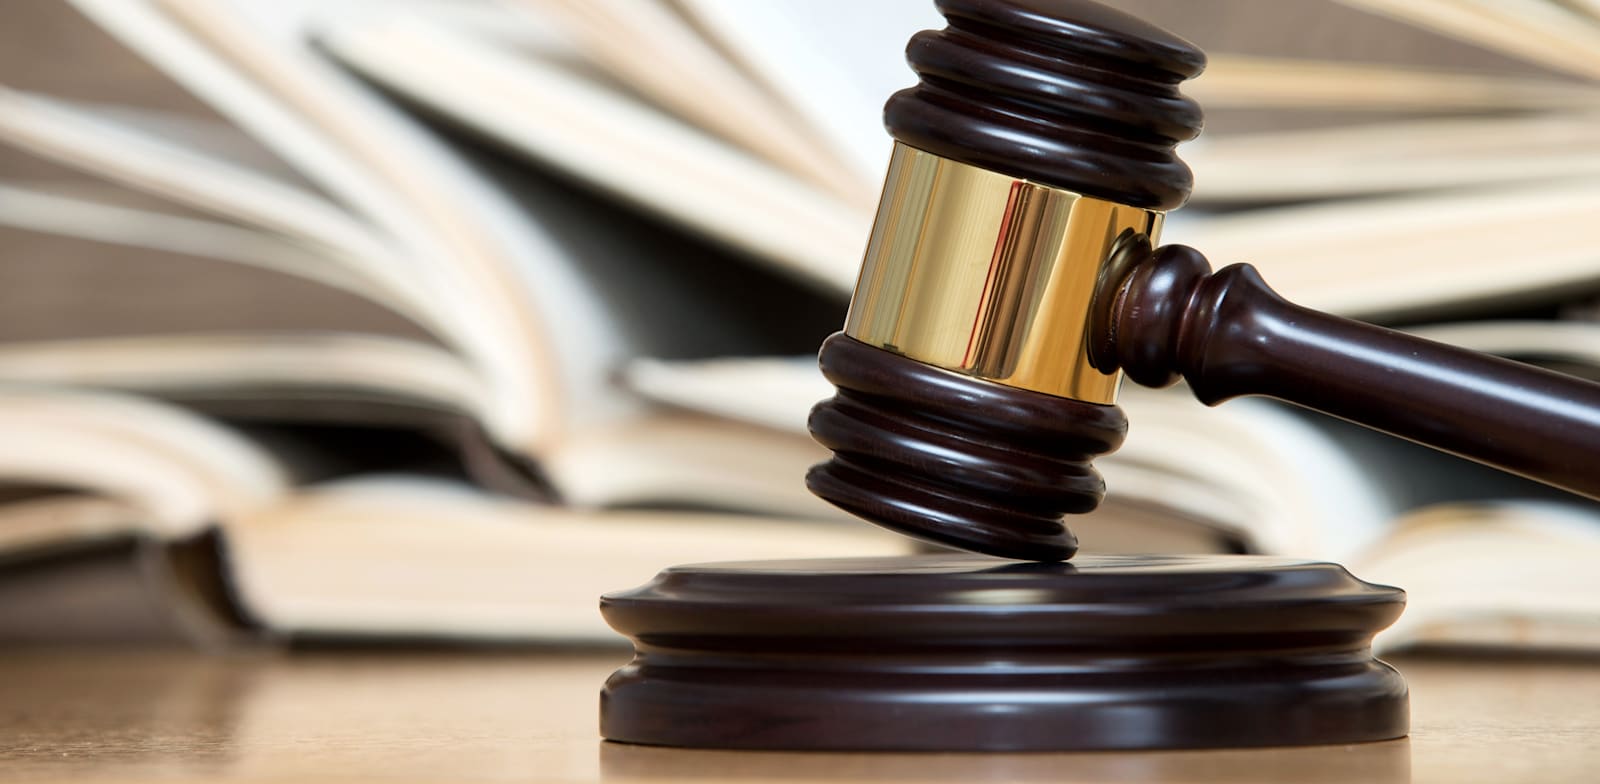 החלטות בתי משפט השלום והמחוזי בתיקים נבחרים יועברו בשידור ישיר / צילום: Shutterstock